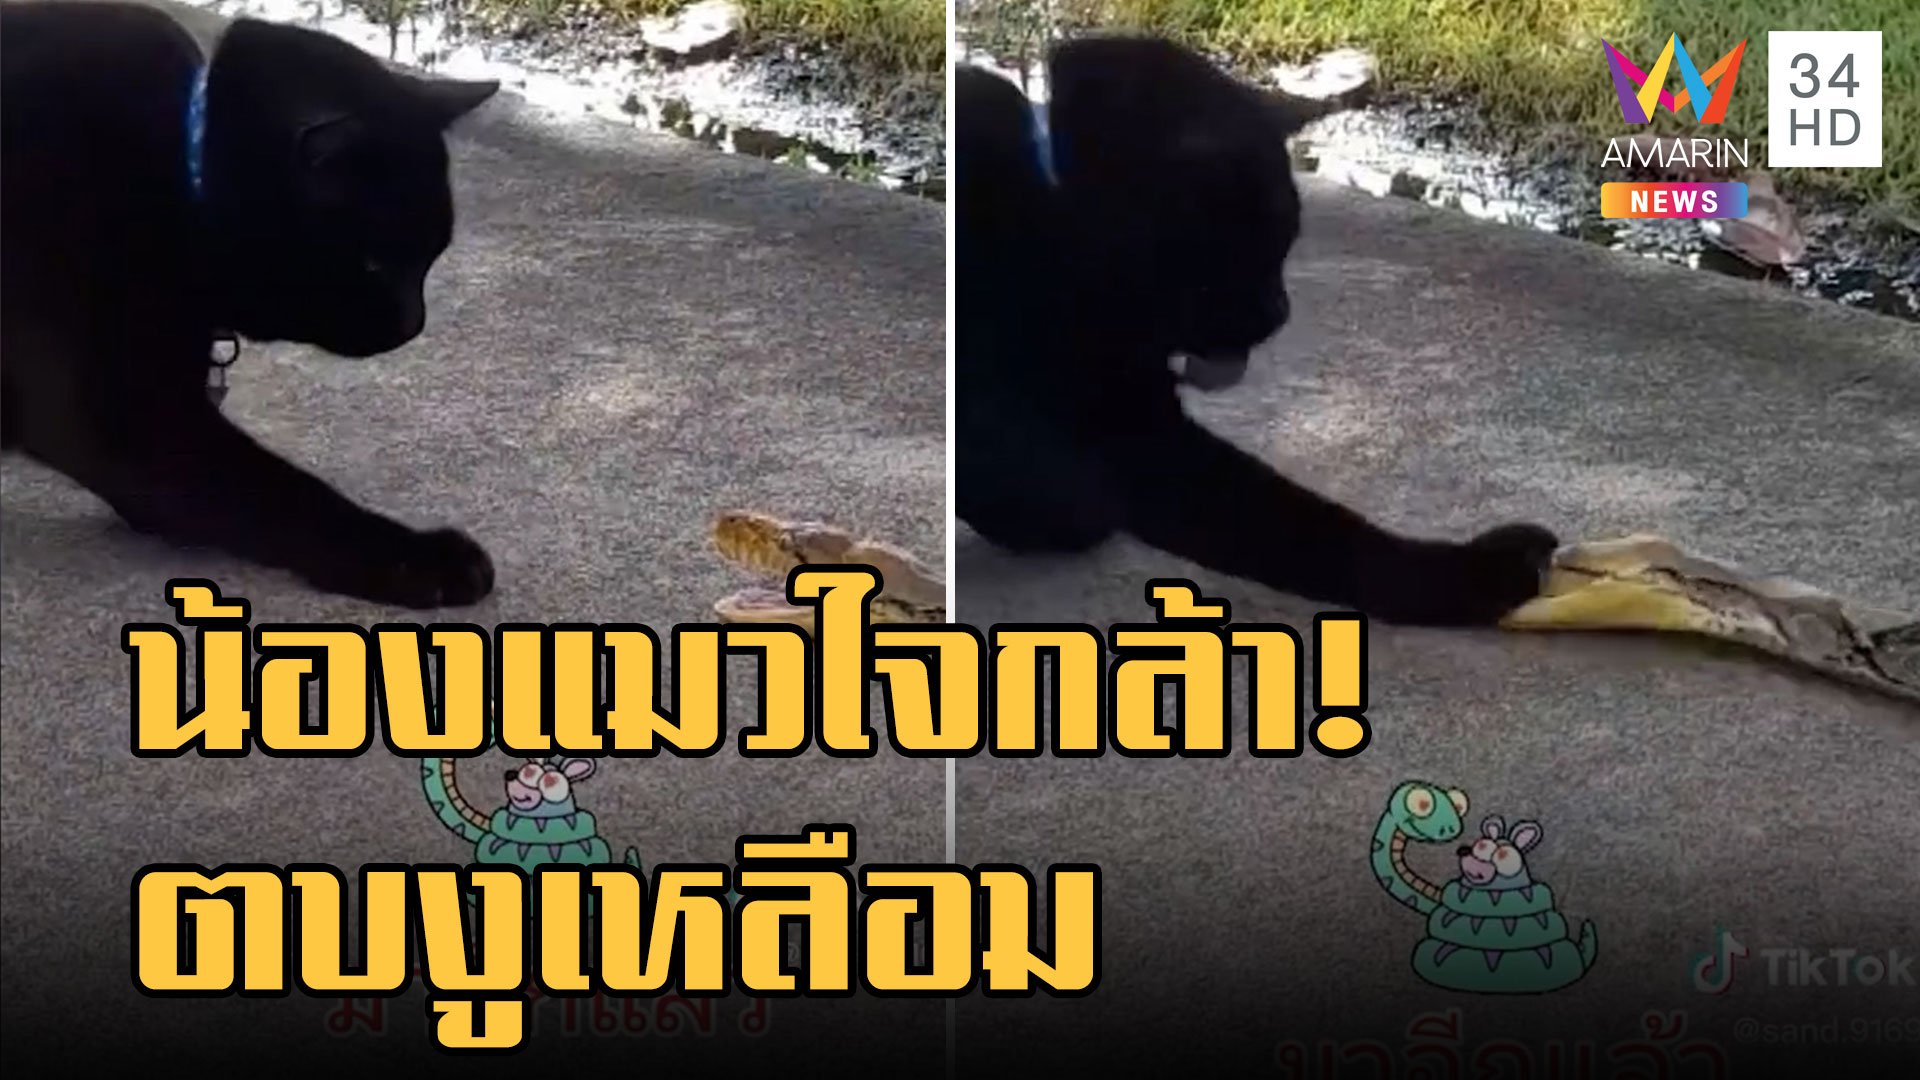 เจ้าเศรษฐี น้องแมวดำใจกล้าตบงูเหลือมหลายป้าบ | ข่าวอรุณอมรินทร์ | 20 พ.ย. 65 | AMARIN TVHD34